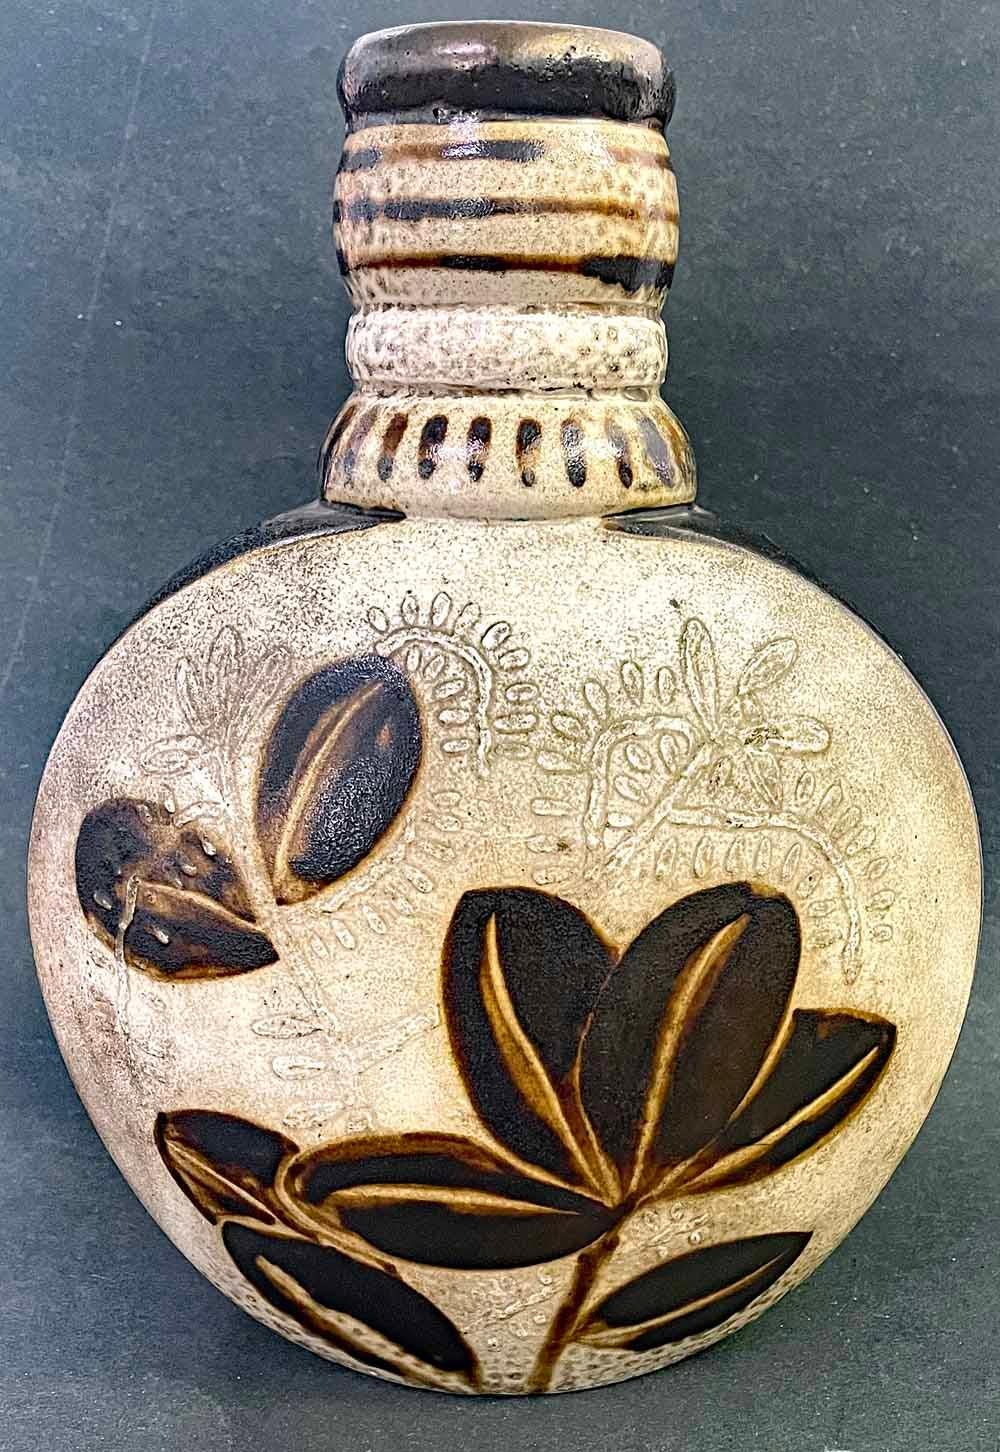 Grand et substantiel, ce vase unique en forme de bouteille présente un lion et une antilope d'un côté, et une Branch avec des feuilles de l'autre, le tout émaillé dans de riches couleurs brun foncé et ivoire.  Chaque face comprend des formes